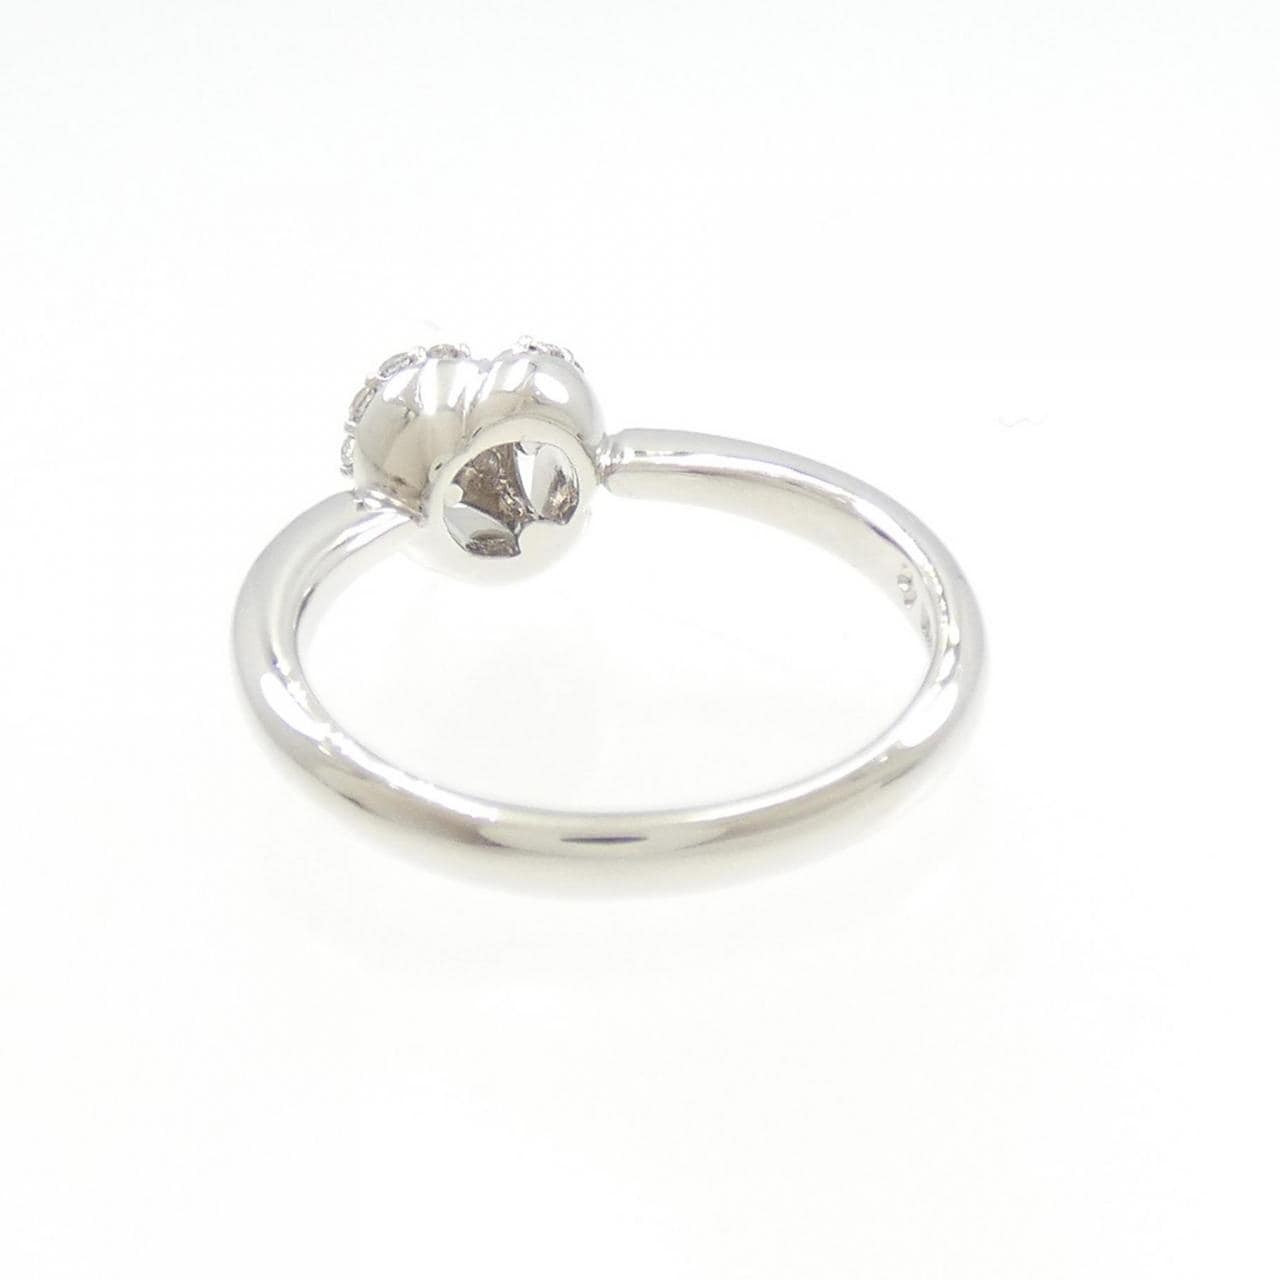 PONTE VECCHIO Rose Diamond Ring 0.14CT